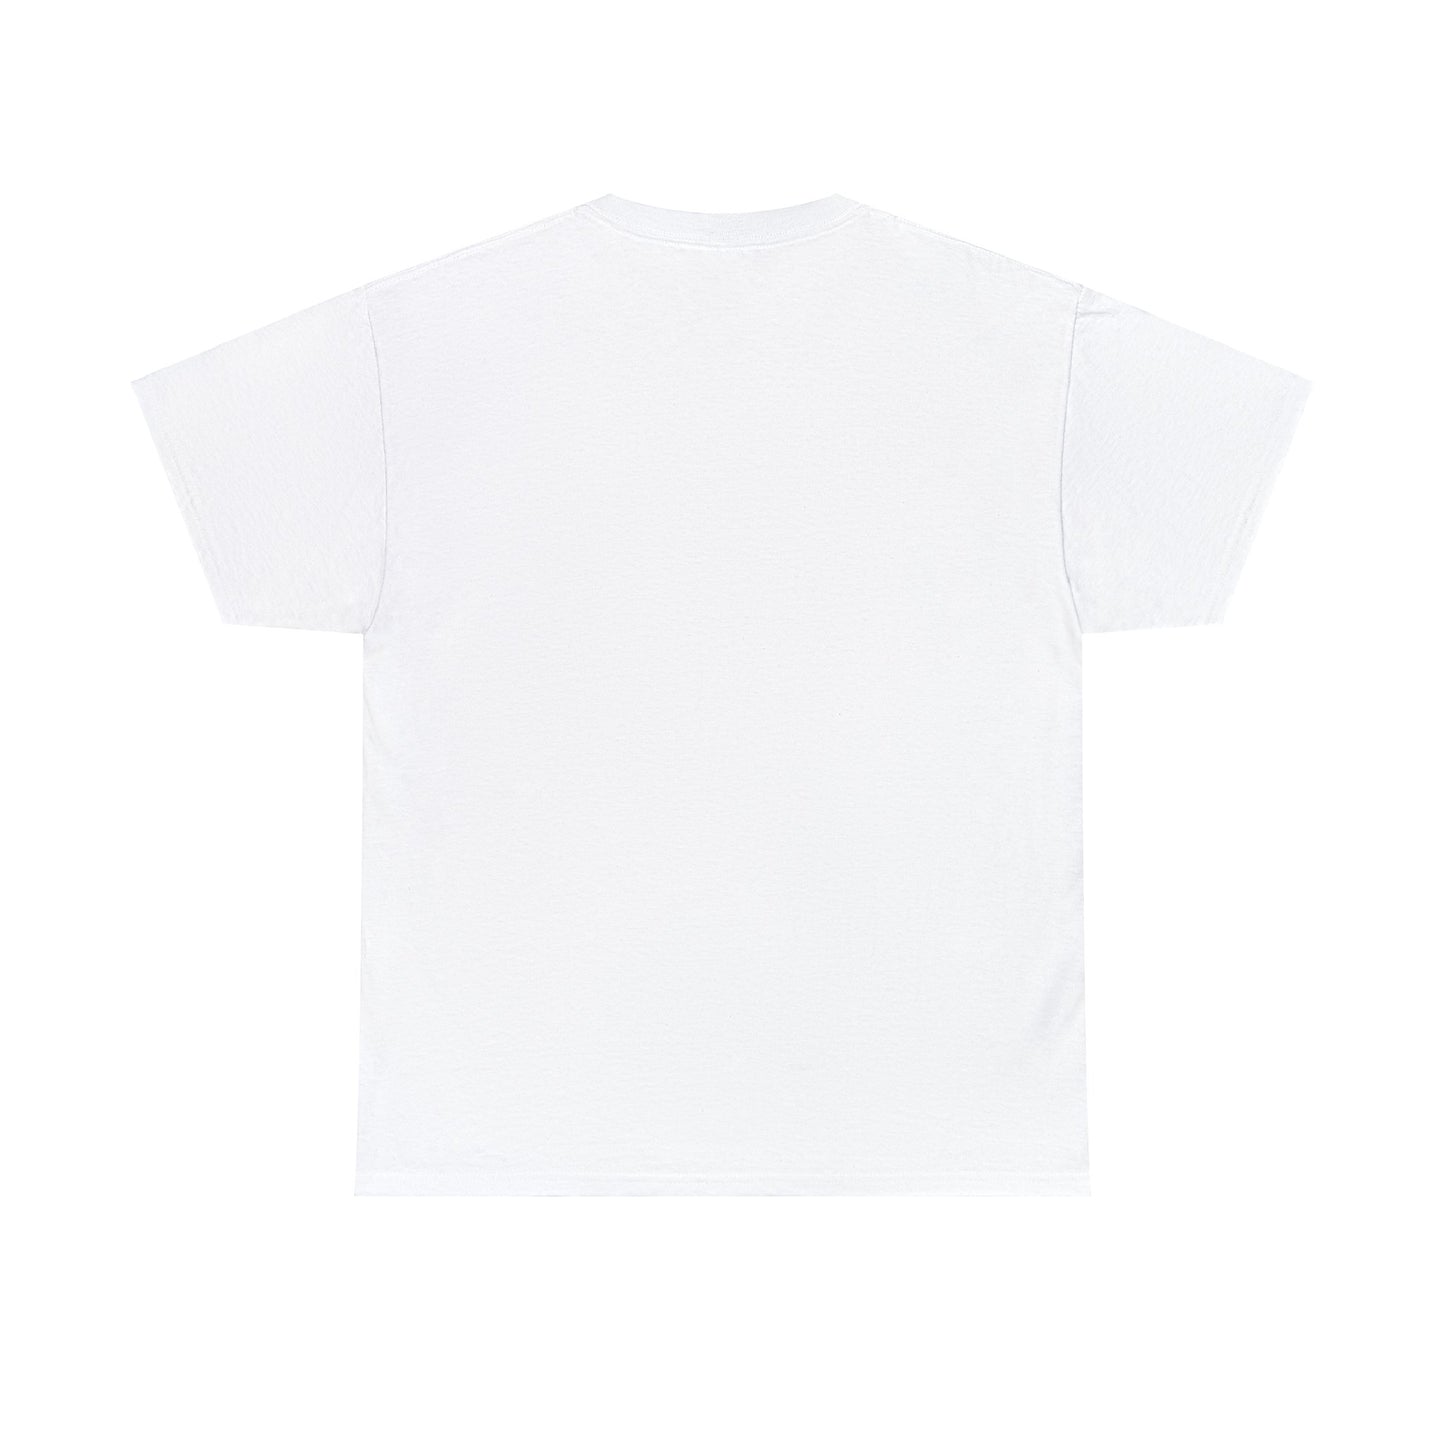 Lectron T-shirt - regular fit